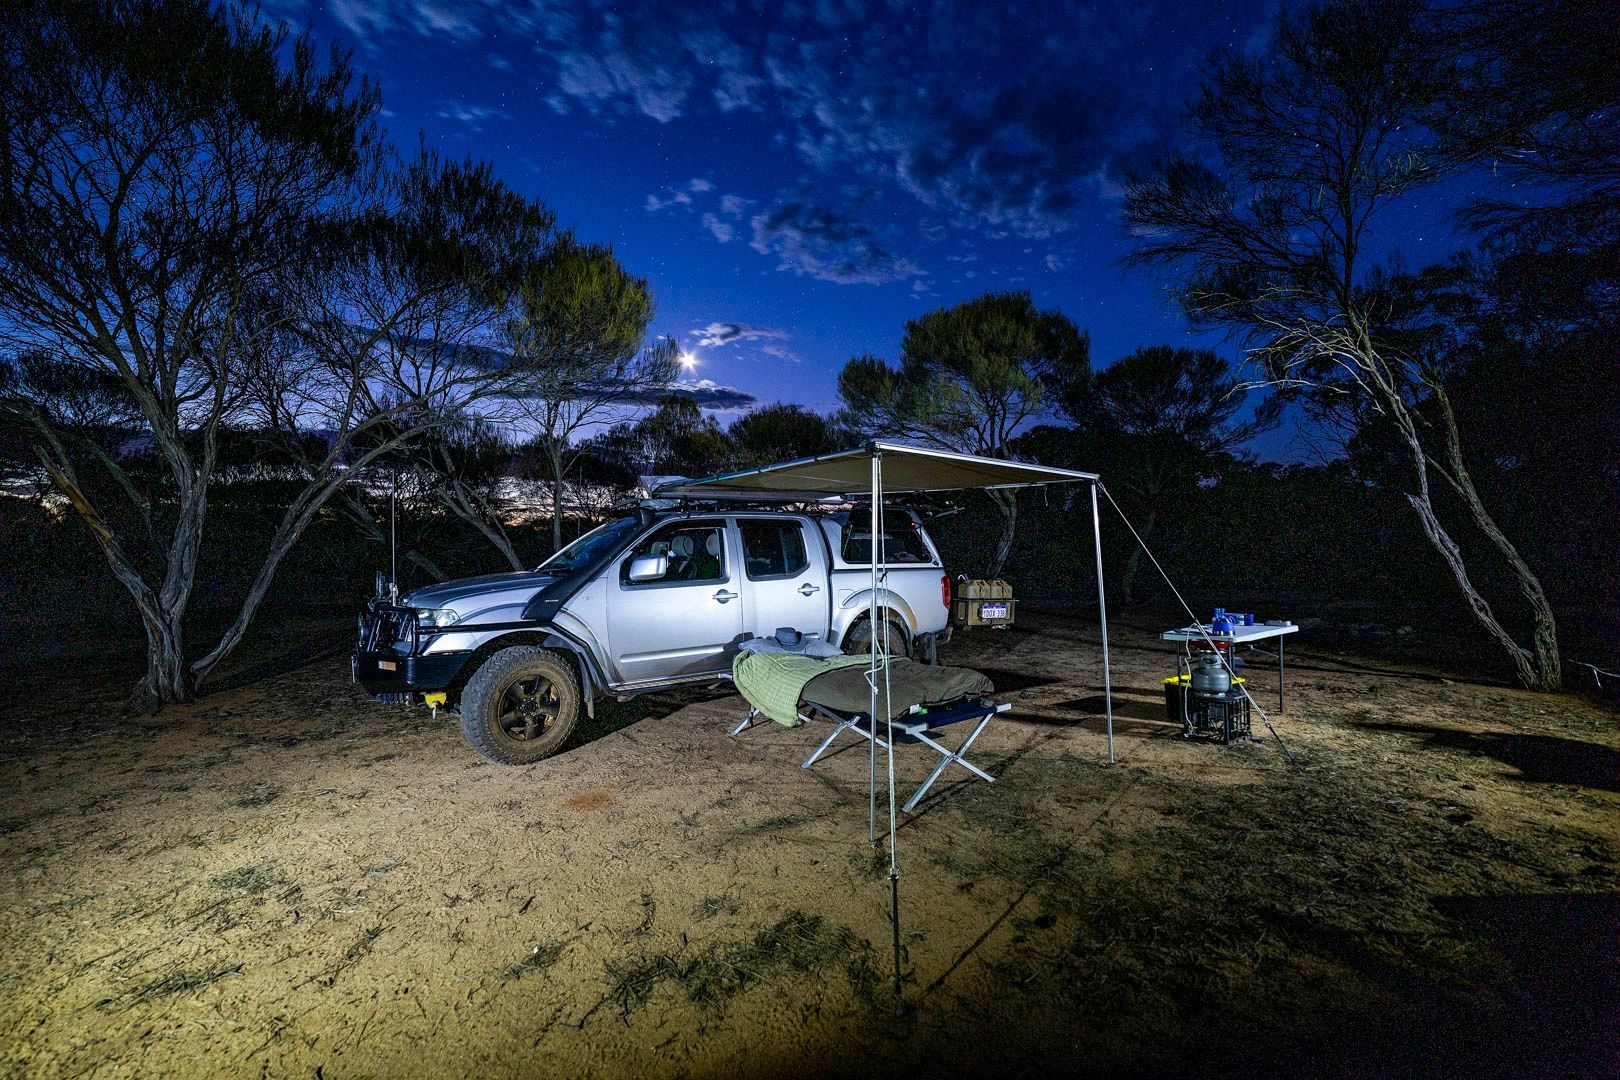 Camping at night at Eagle Rock, Western Australia.